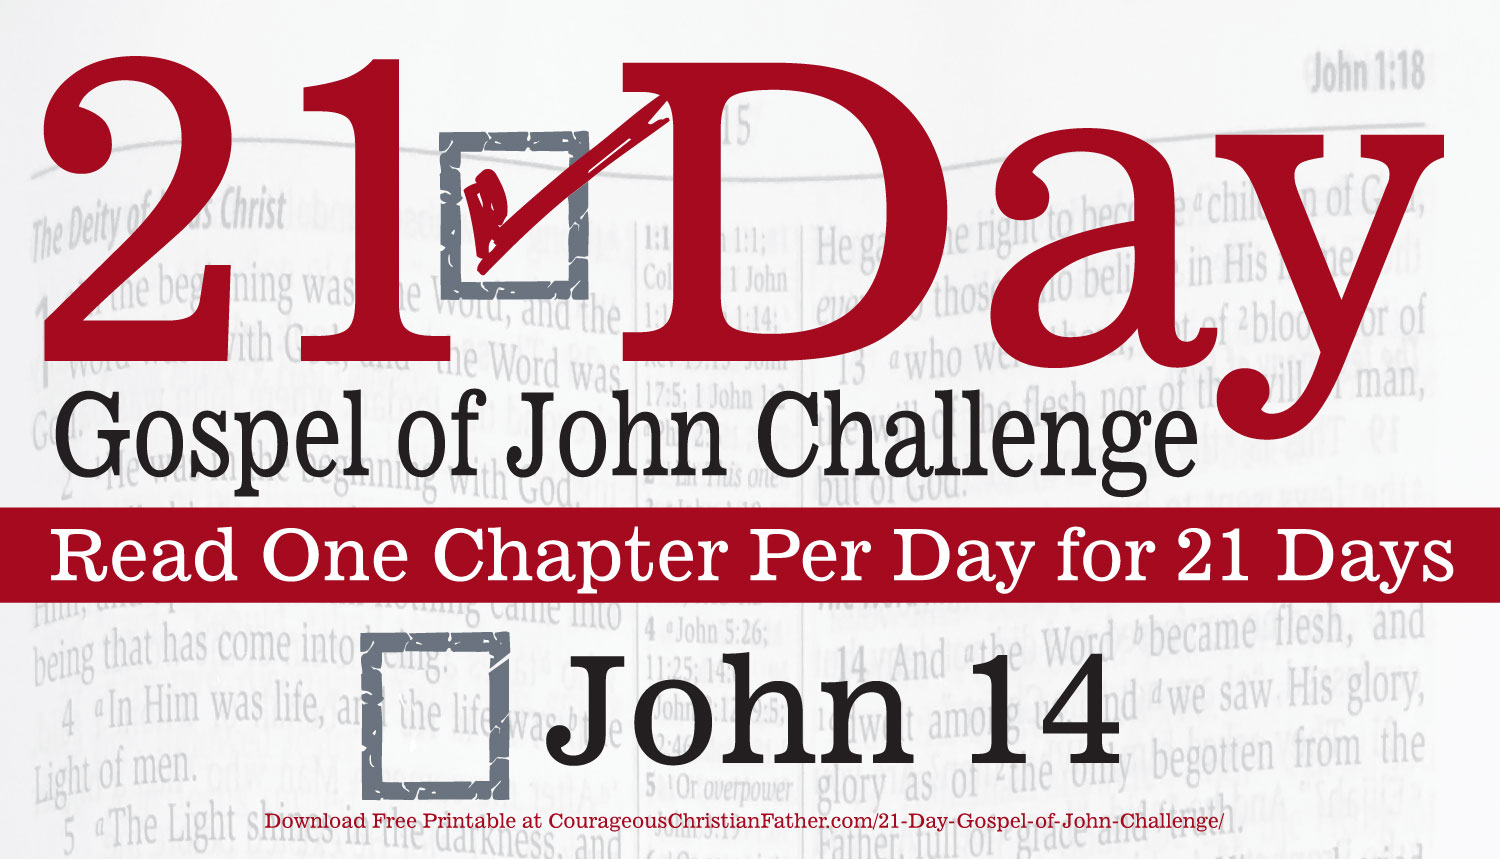 John 14 - Today is Day 14 of the 21 Day Gospel of John Challenge. Today read Chapter 14 of the Gospel of John. #John14 #BGBG2